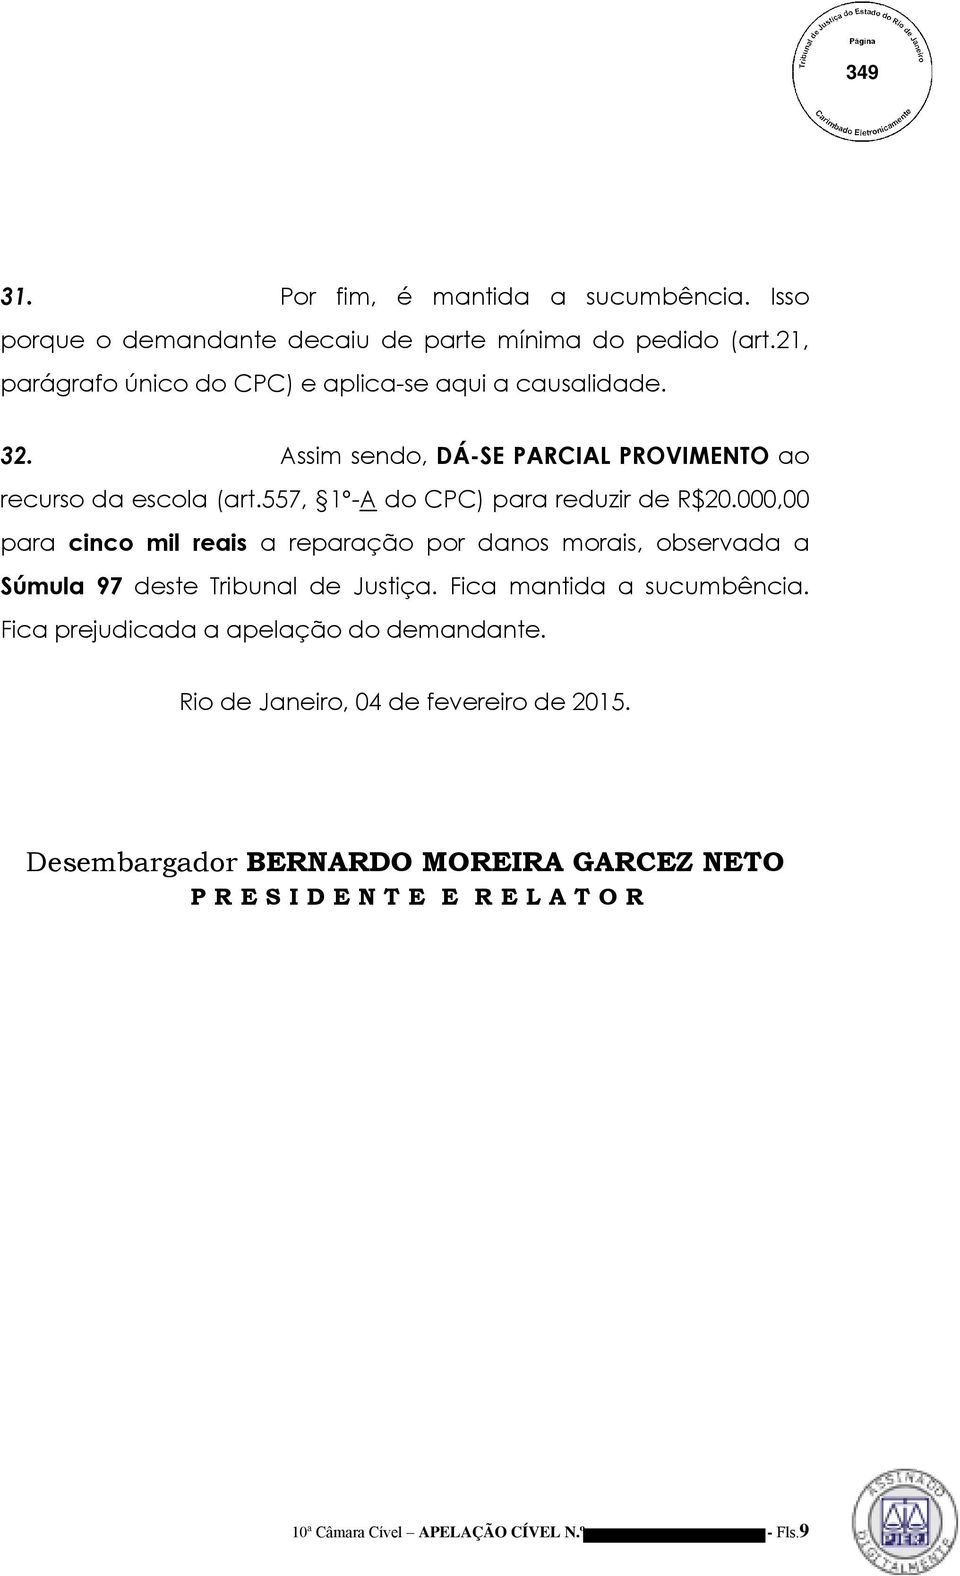 557, 1º-A do CPC) para reduzir de R$20.000,00 para cinco mil reais a reparação por danos morais, observada a Súmula 97 deste Tribunal de Justiça.